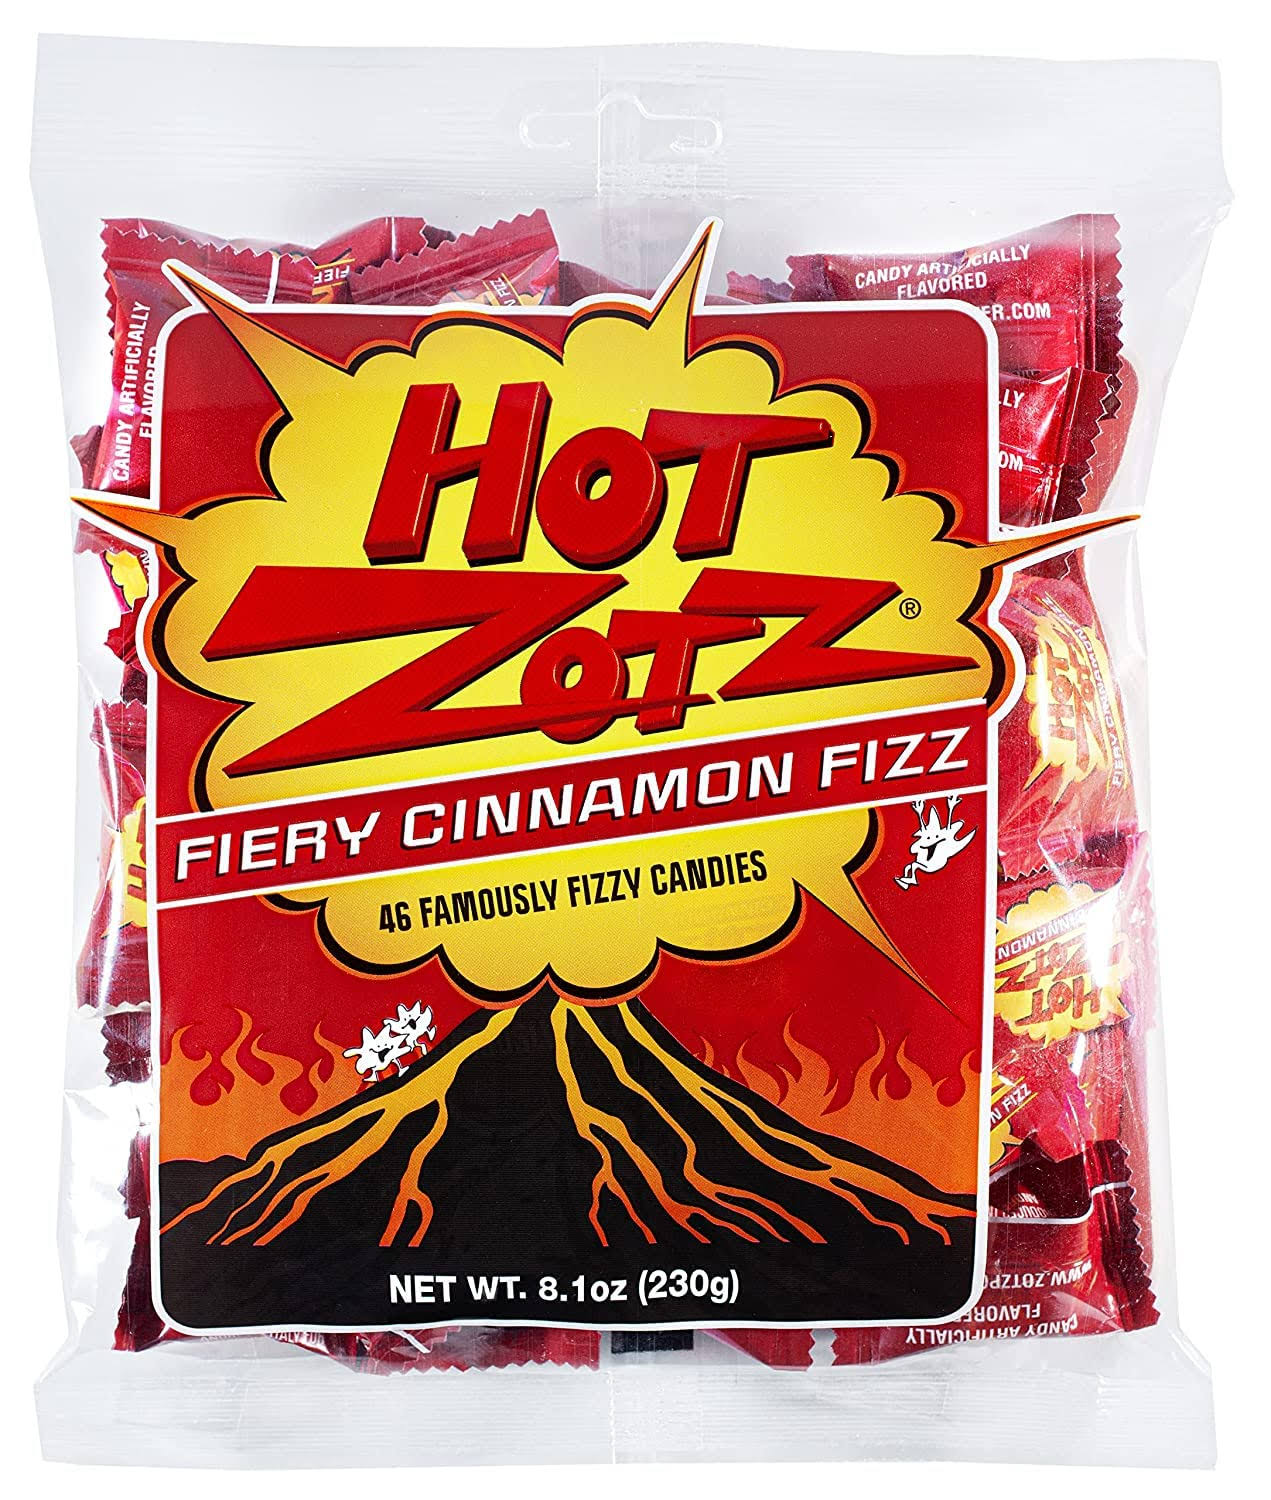 Hot Zotz Fiery Cinnamon Fizz Candy